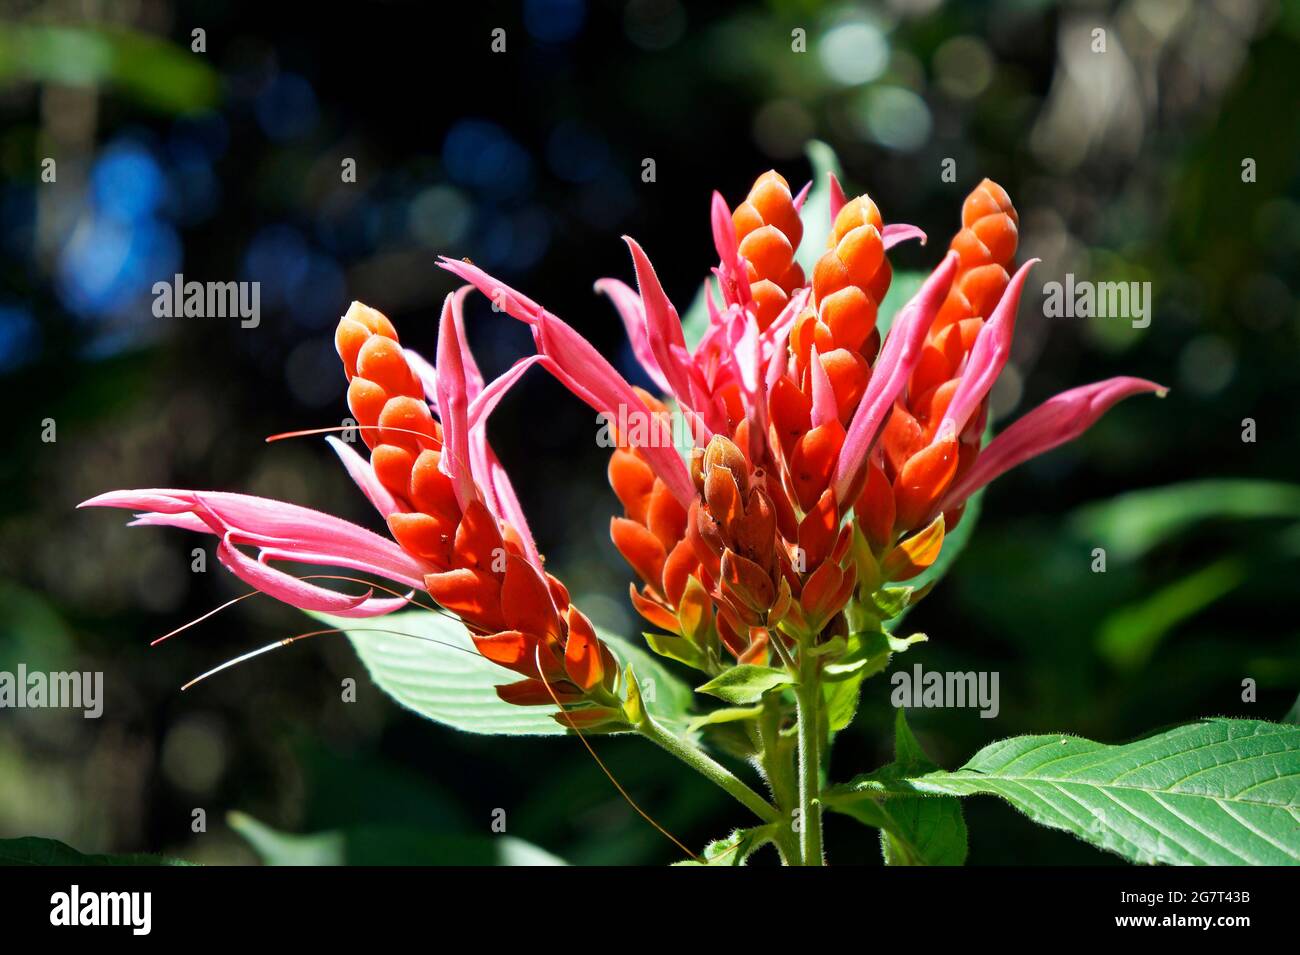 Orange shrimp flower or Panama Queen flower (Aphelandra sinclairiana), Minas Gerais, Brazil Stock Photo